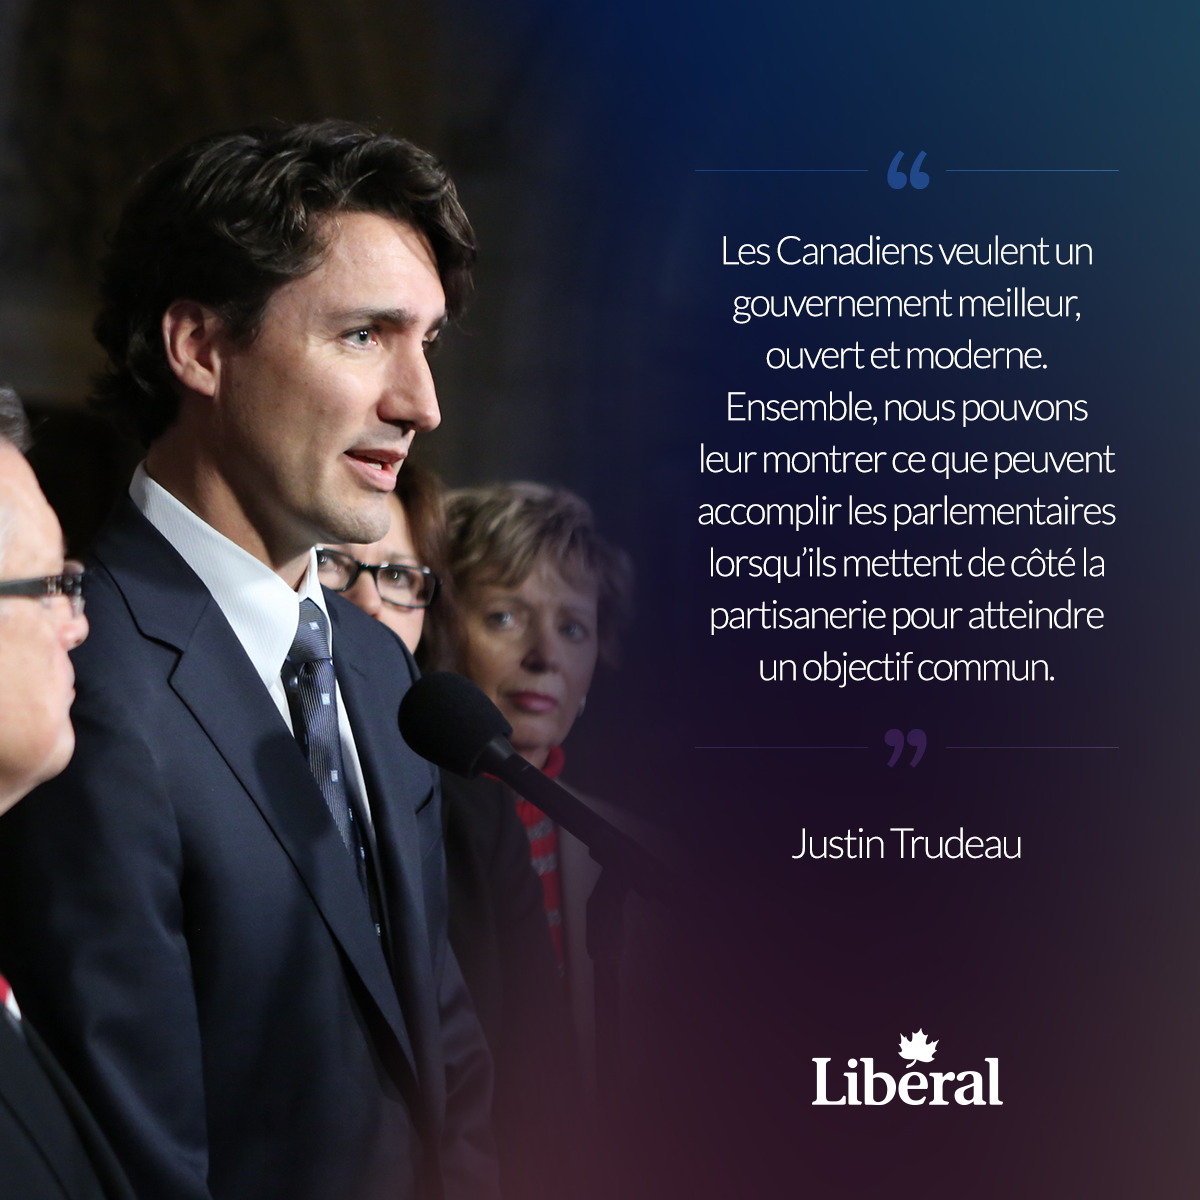 "Les Canadiens veulent un gouvernement meilleur, ouvert et moderne. Ensemble, nous pouvons leur montrer ce que peuvent accomplir les parlementaires lorsqu'ils mettent de côté la partisanerie pour atteindre un objectif commun". - Justin Trudeau